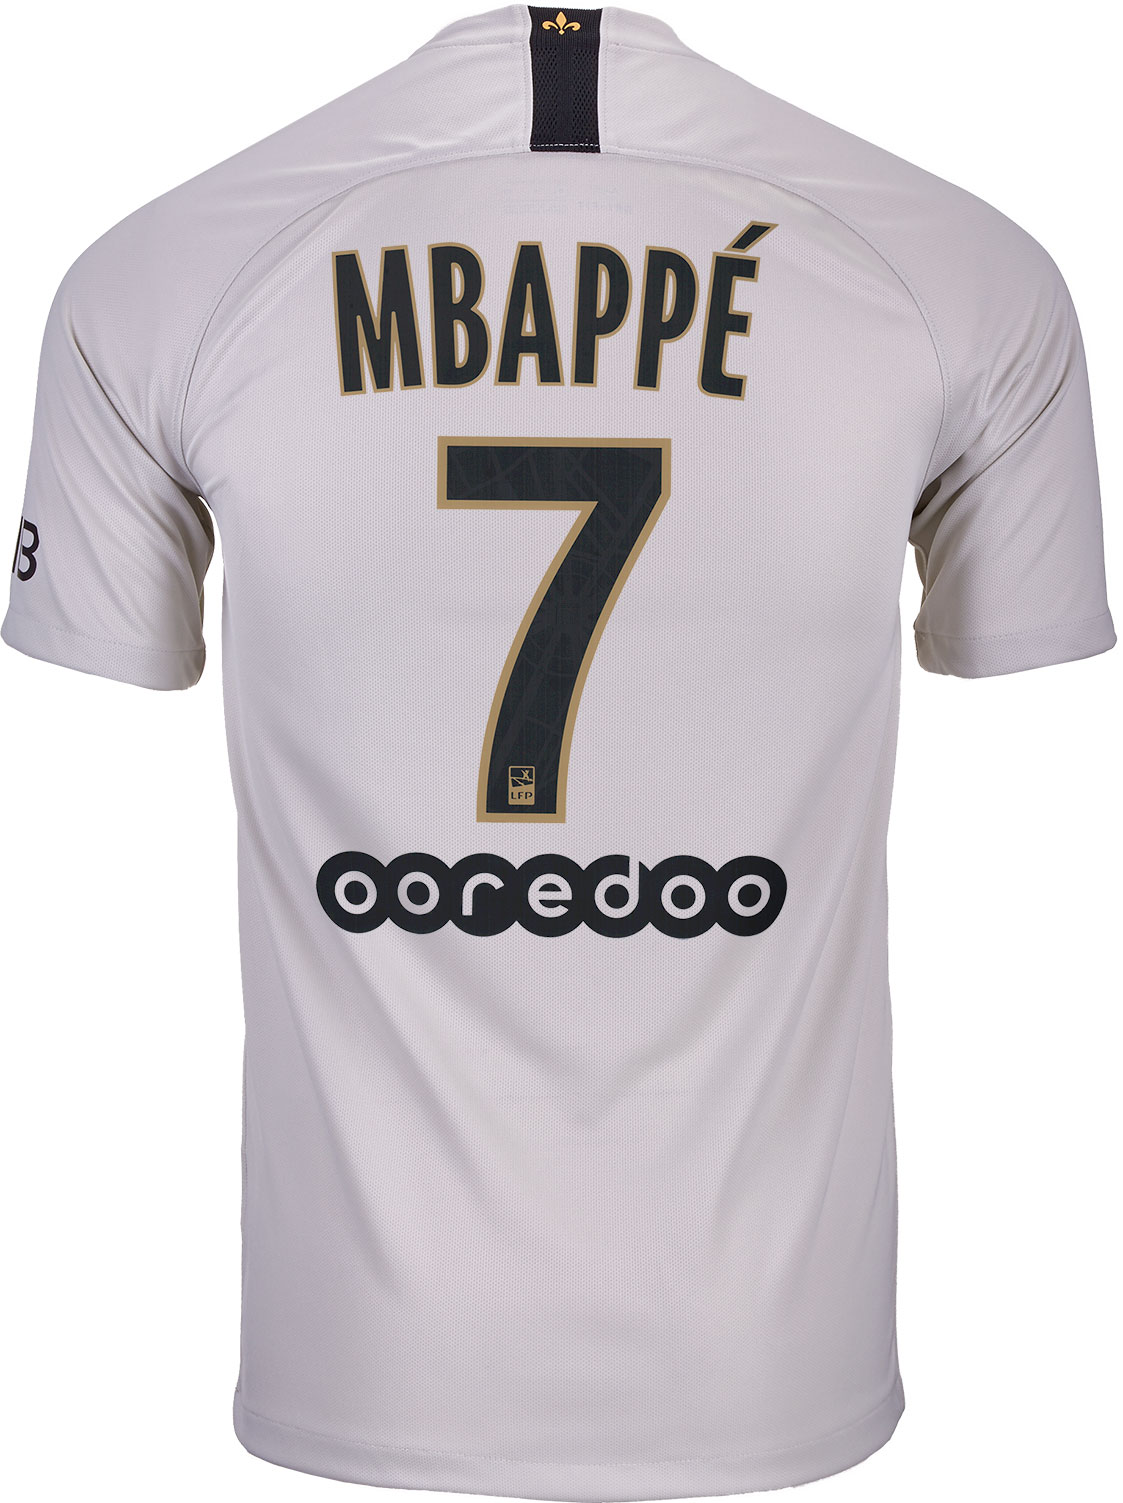 mbappe psg black jersey